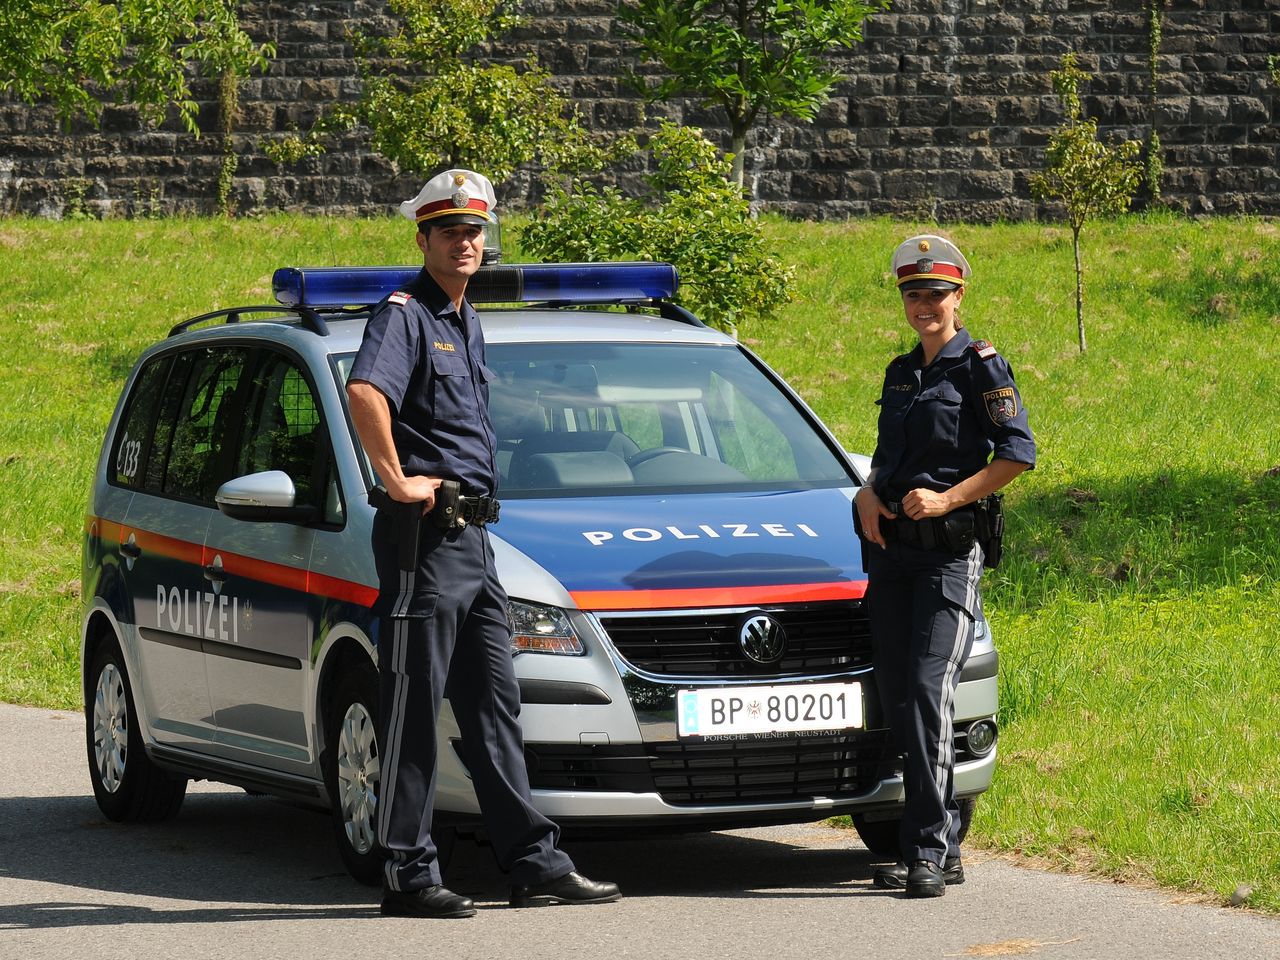 Austriacka policja